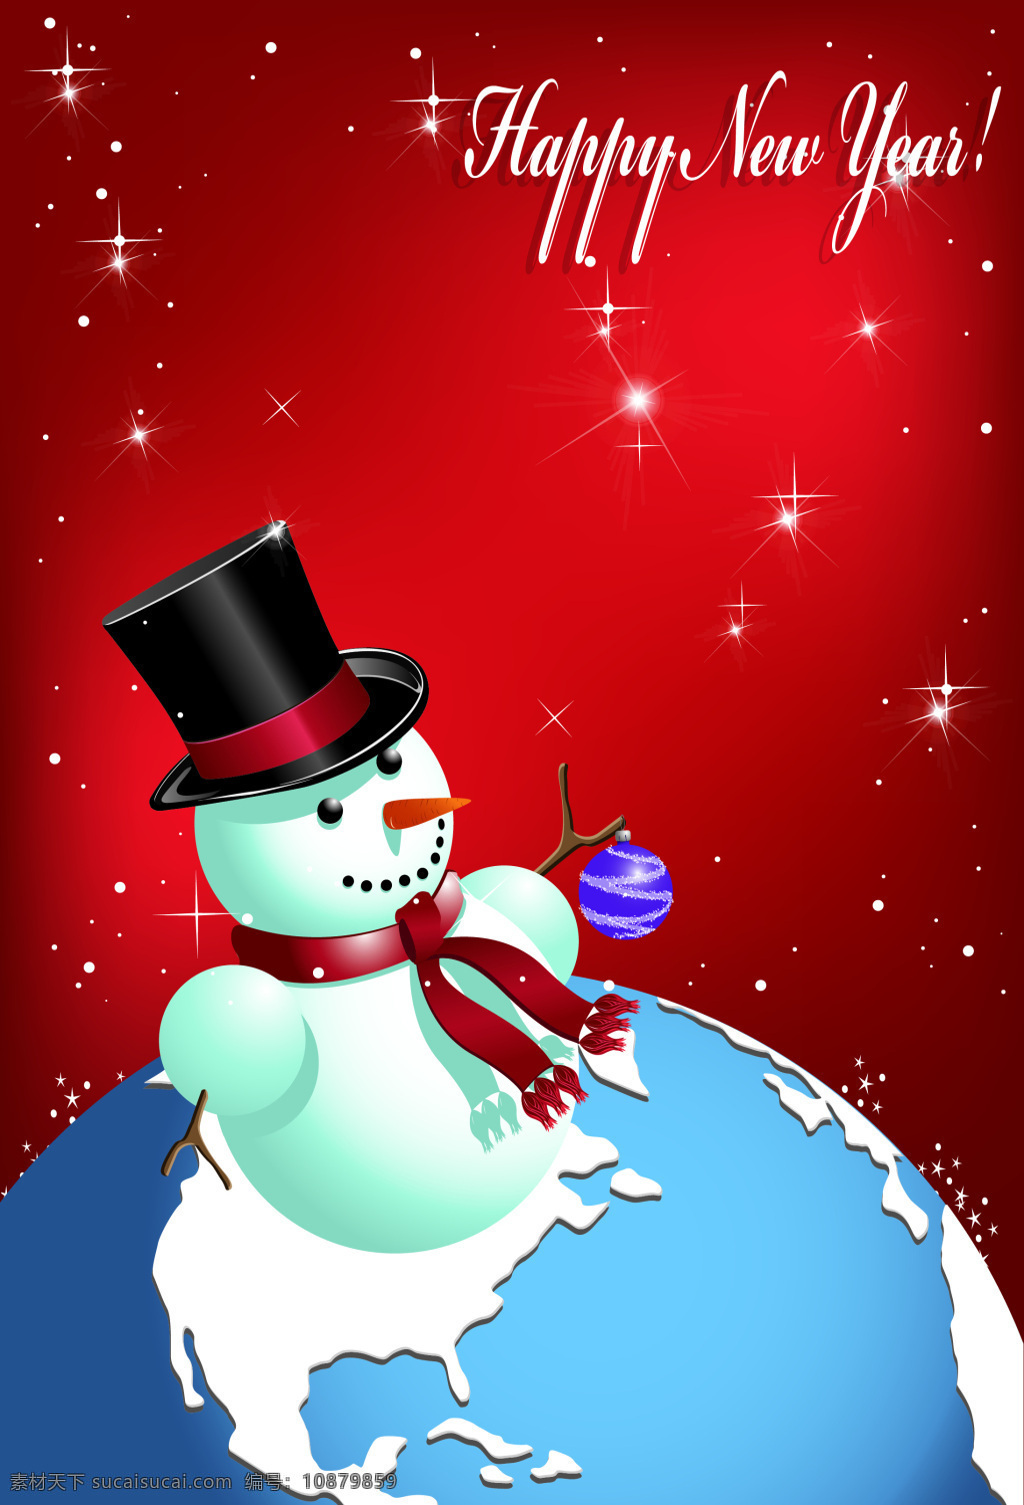 地球 上 小雪 人 新年 快乐 海报 背景 小雪人 可爱 红色 矢量 幸福 卡通 童趣 手绘